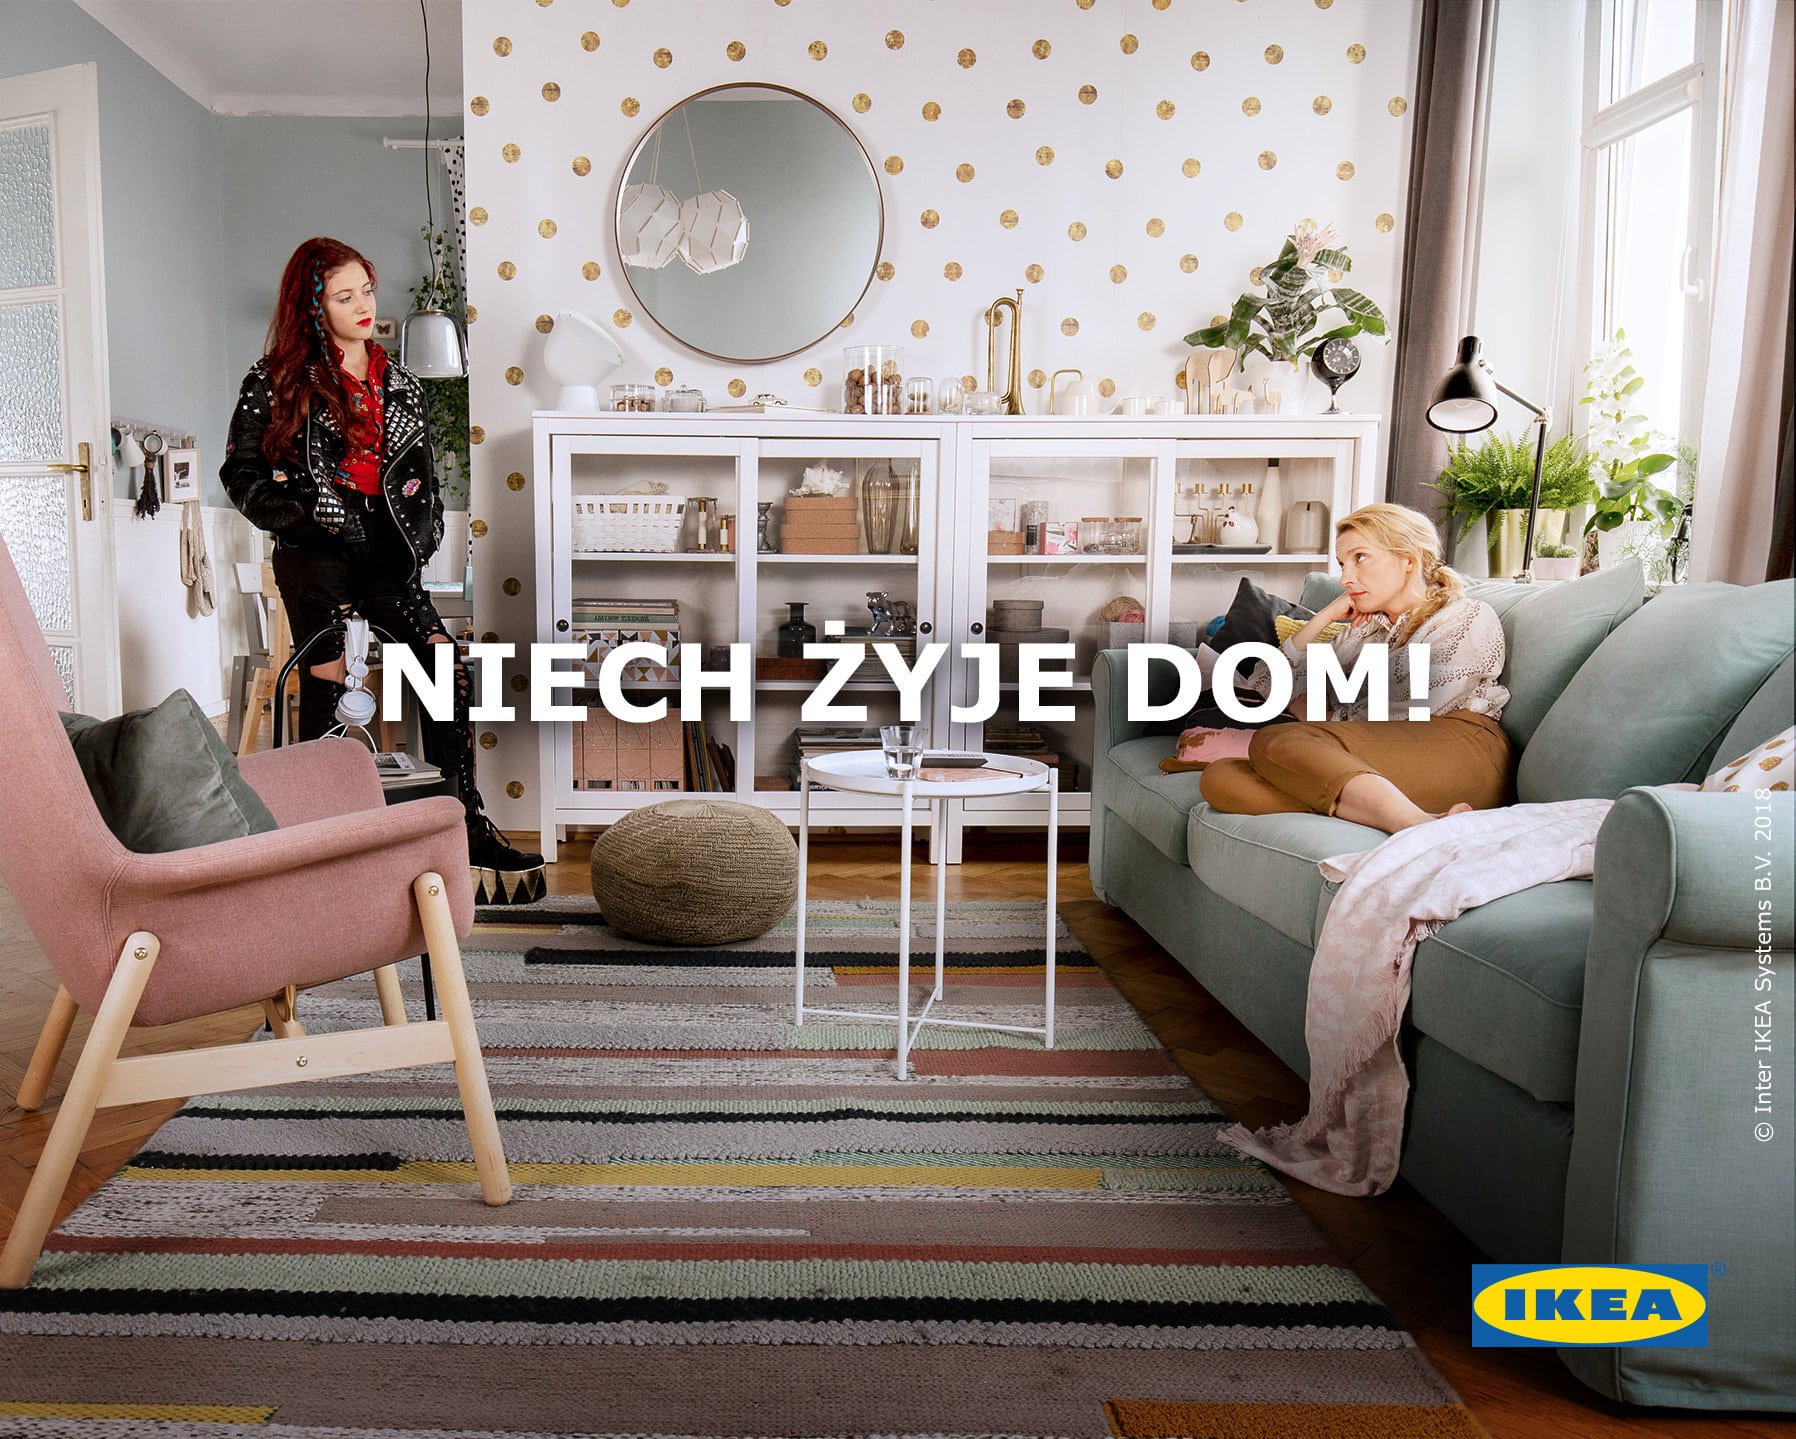 Nowa Kampania Ikea O Tym Jak Wazne Sa Relacje W Domu